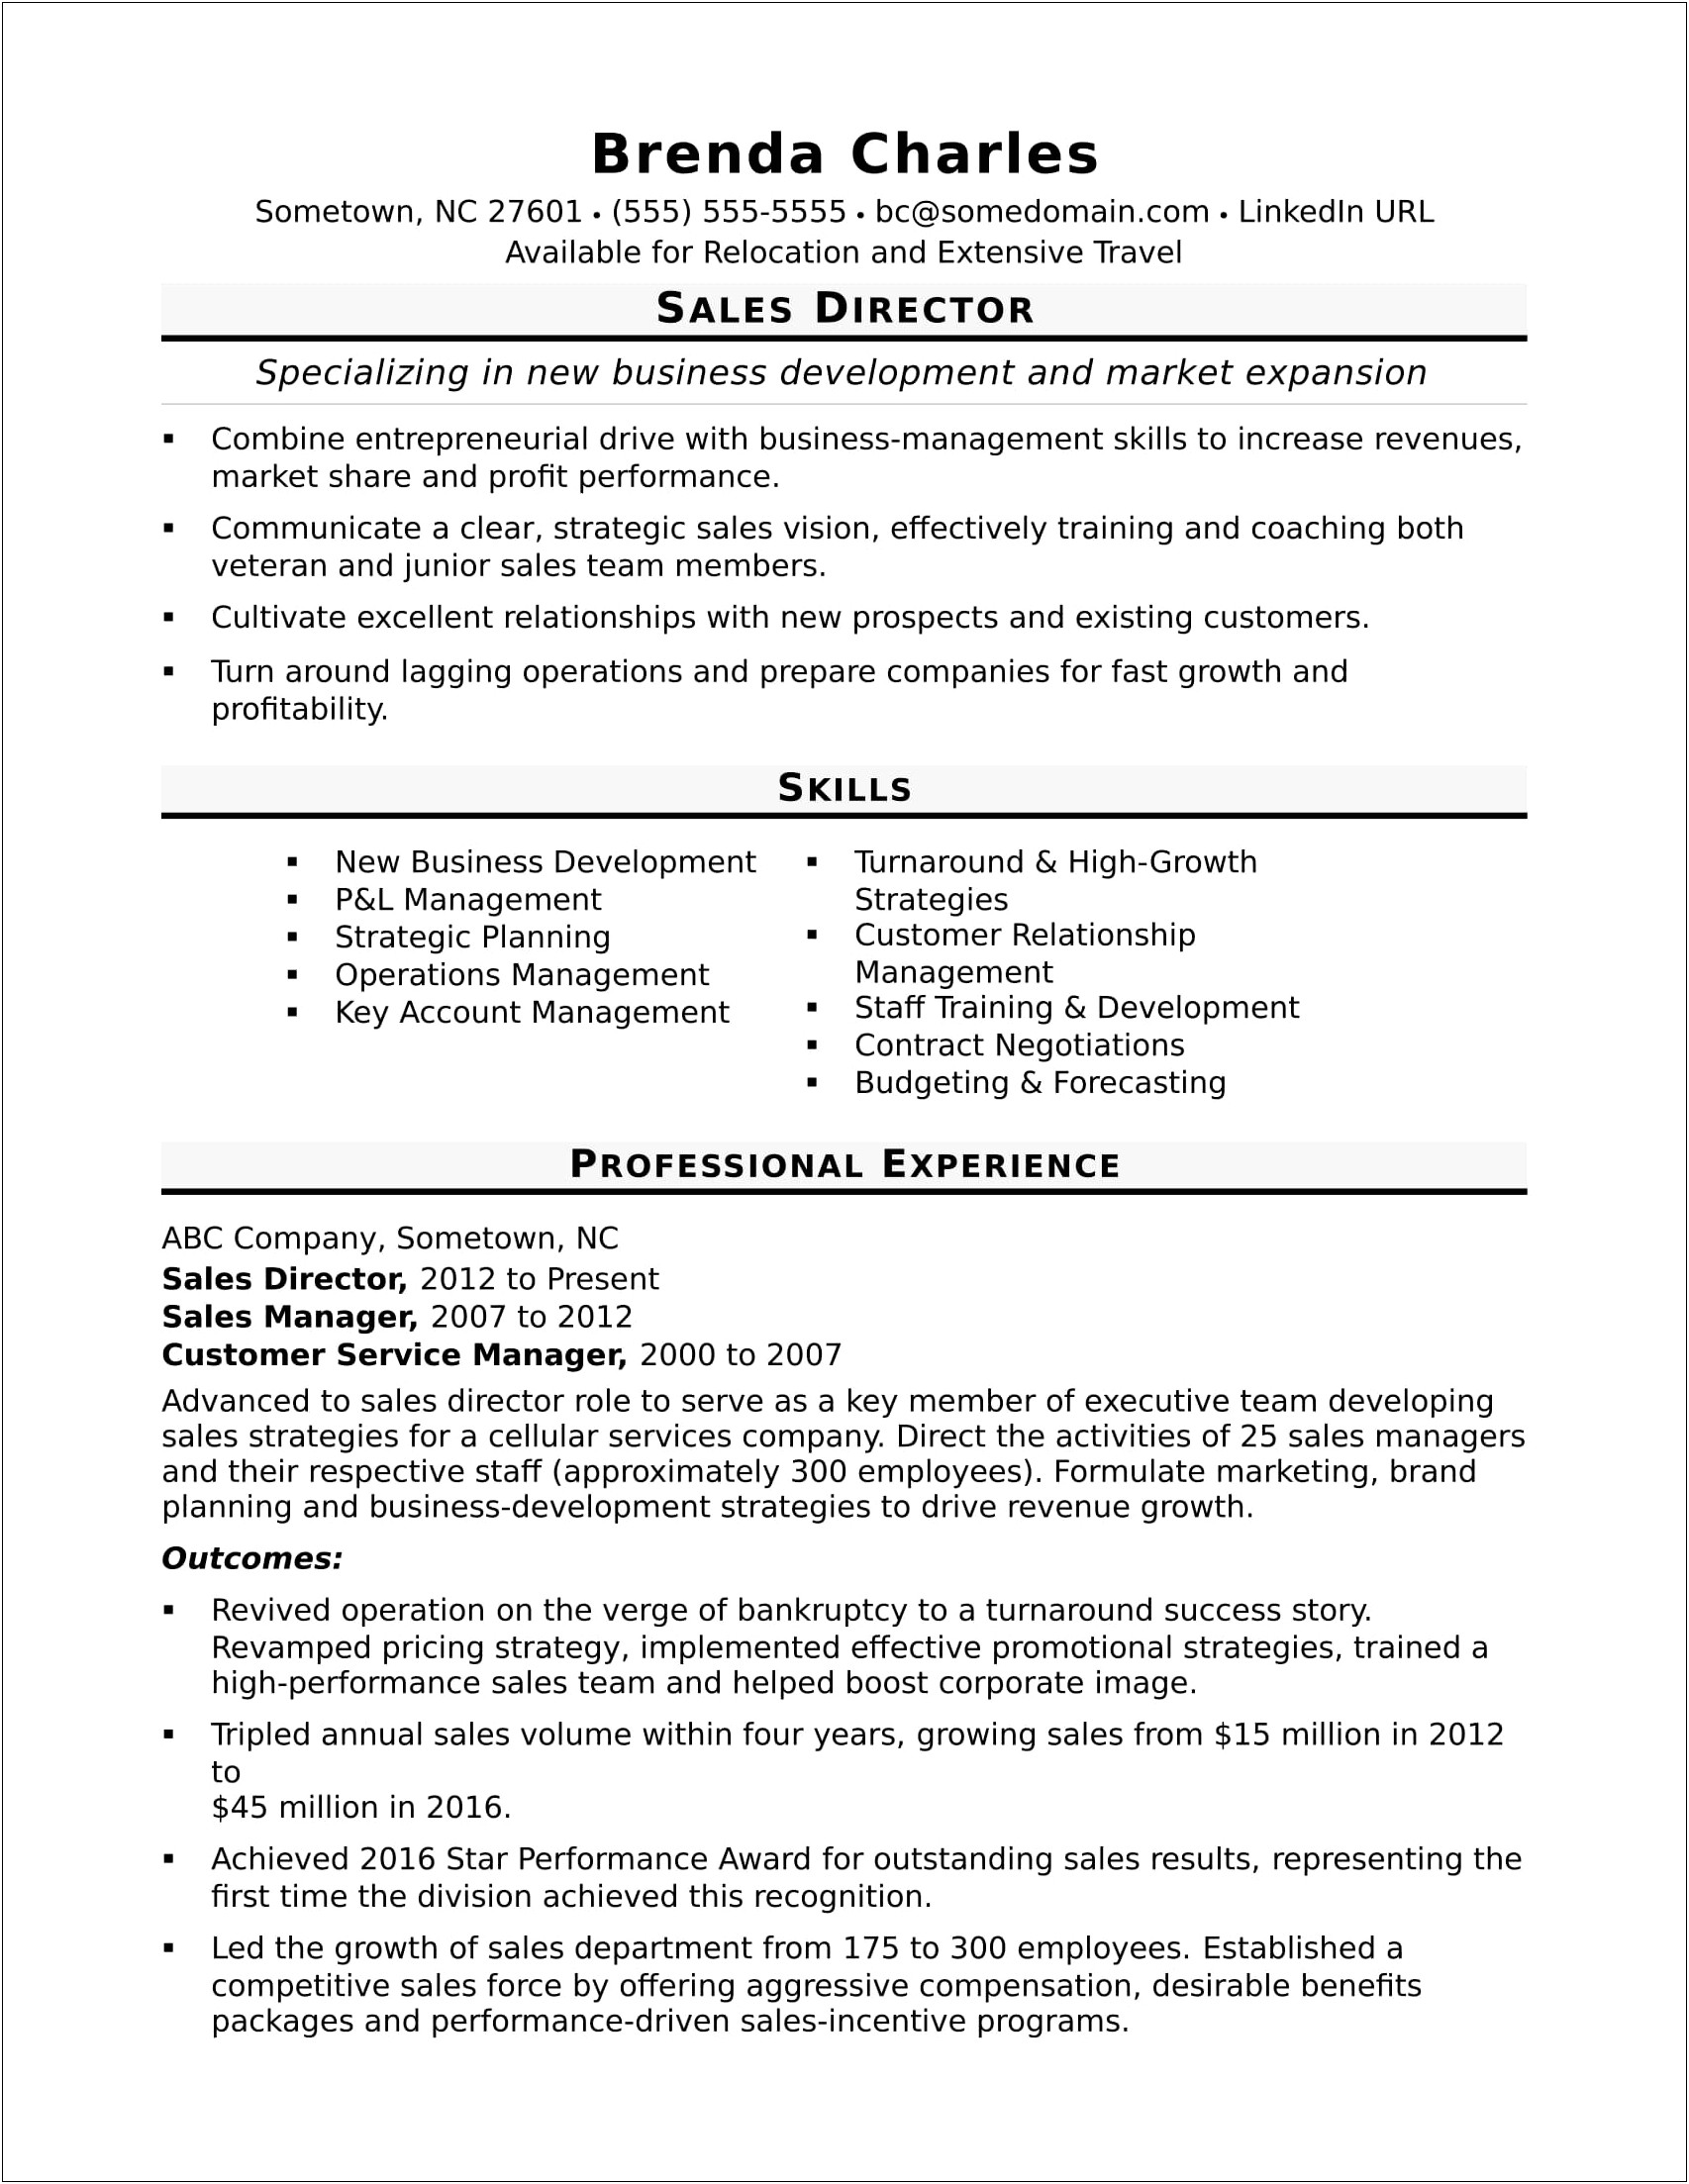 Business Owner Job Description Sample Resume